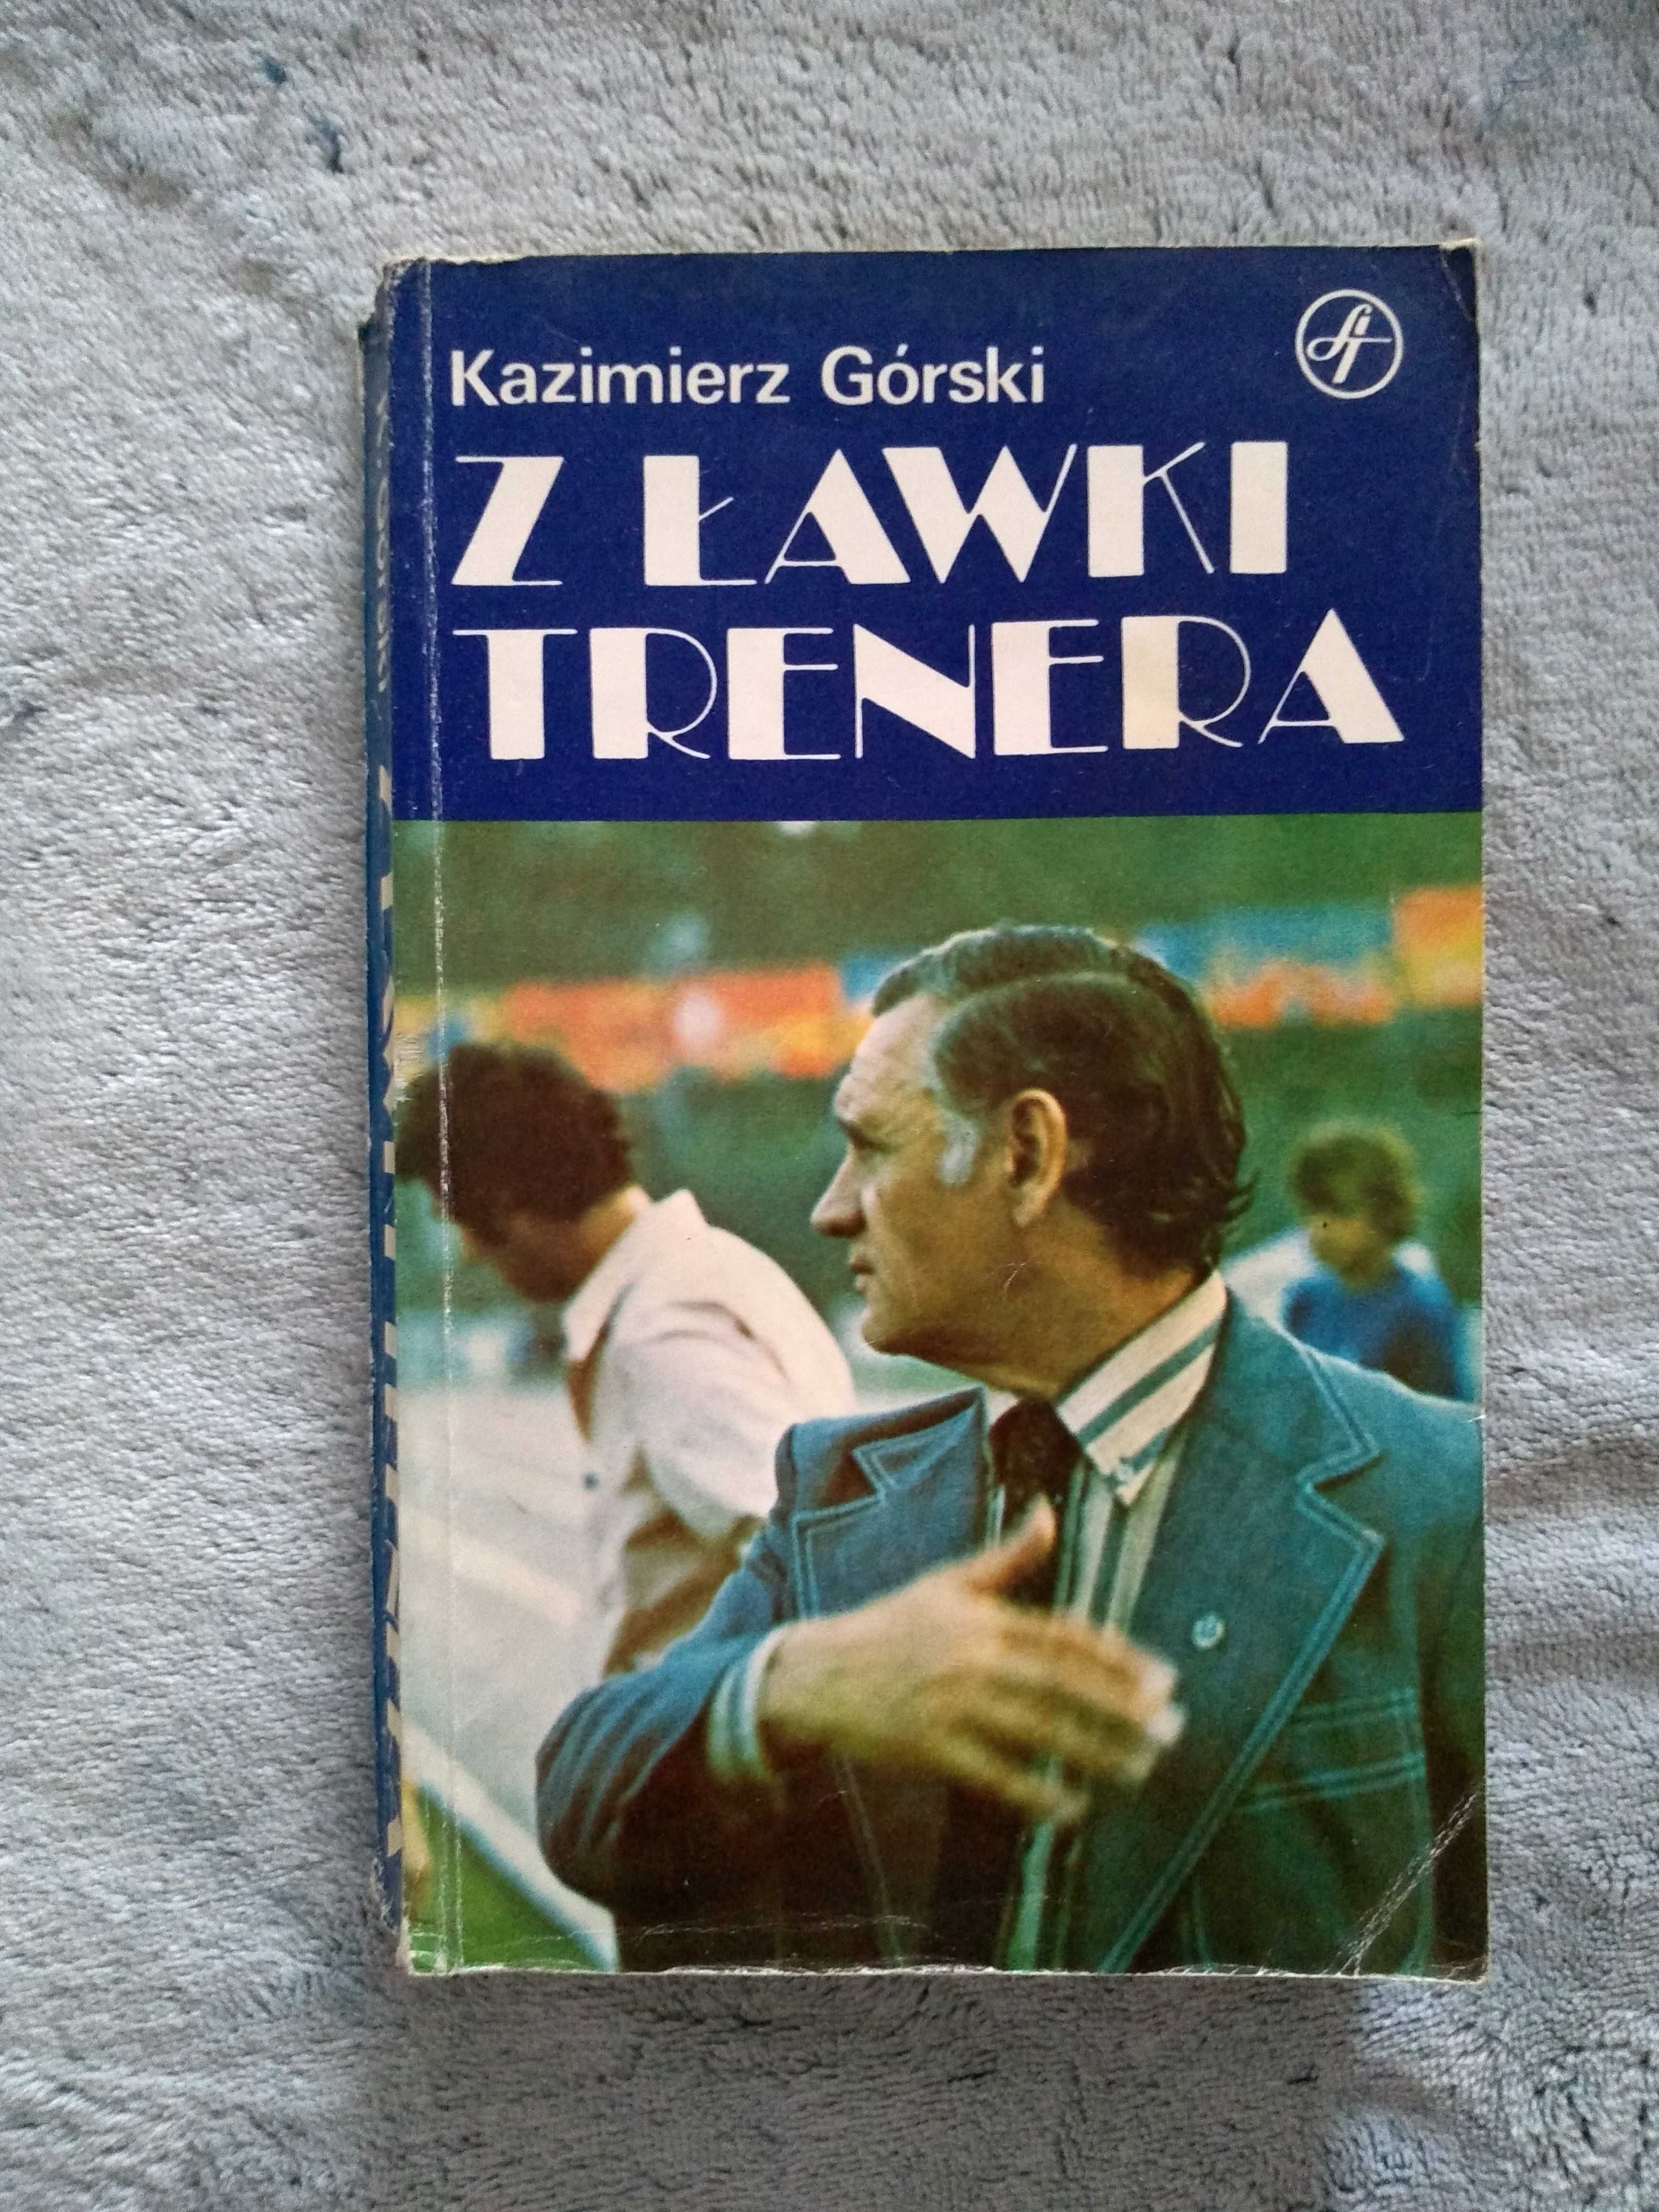 Z ławki trenera - Kazimierz Górski, książka z 1981 roku